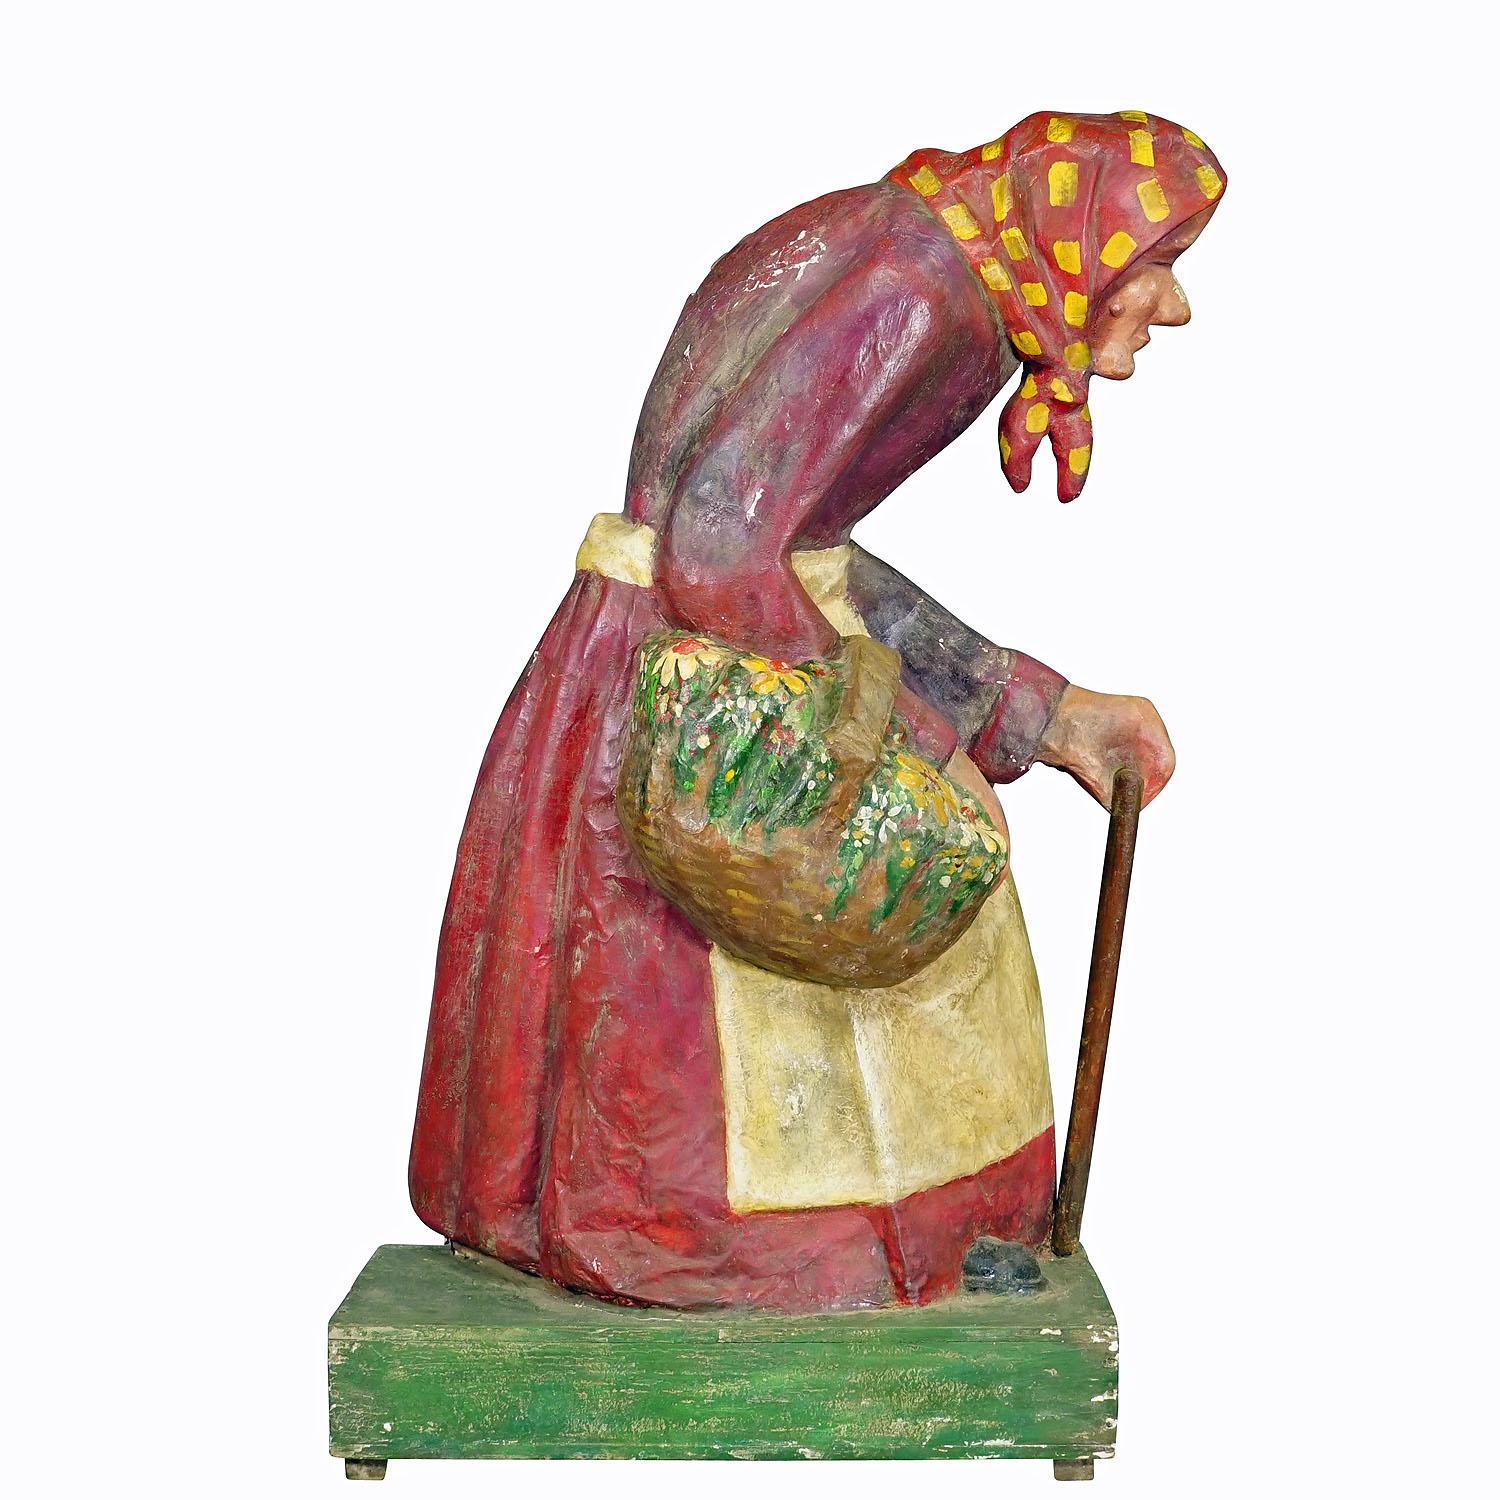 Antike Jahrmarktspapiermache-Skulptur einer Hexe oder einer Bäuerin

Eine große Halbreliefskulptur der Hexe aus dem Märchen Hänsel und Gretel. Wahrscheinlich als Dekoration in einem Märchengarten auf einer Kirmes verwendet. Handgefertigt aus